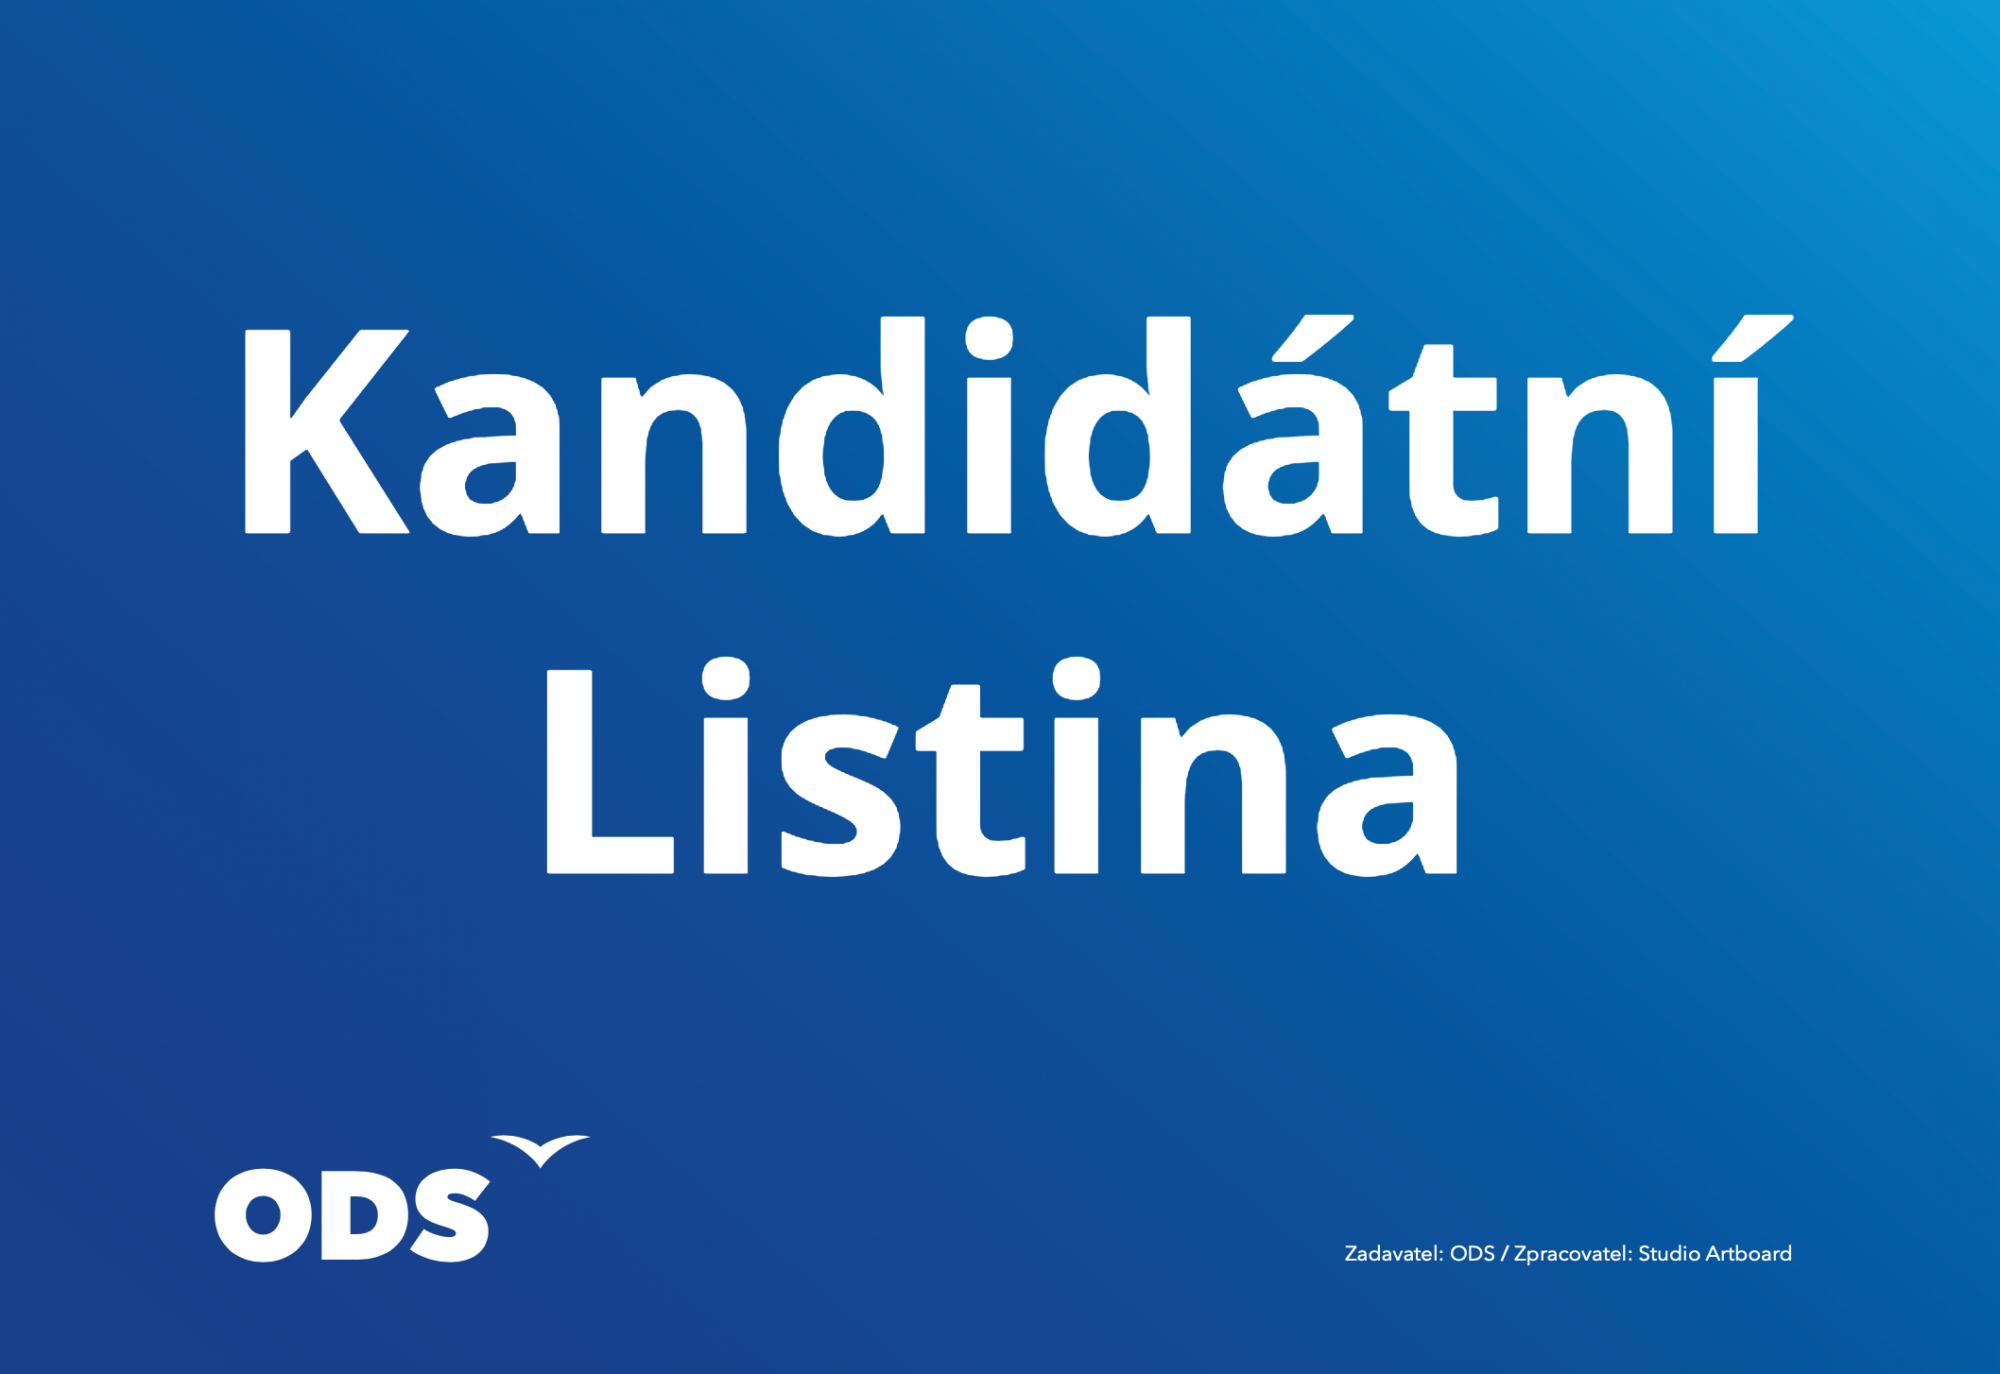 Kandidátní listina ODS Pustkovec pro komunální volby 5. a 6. října 2018